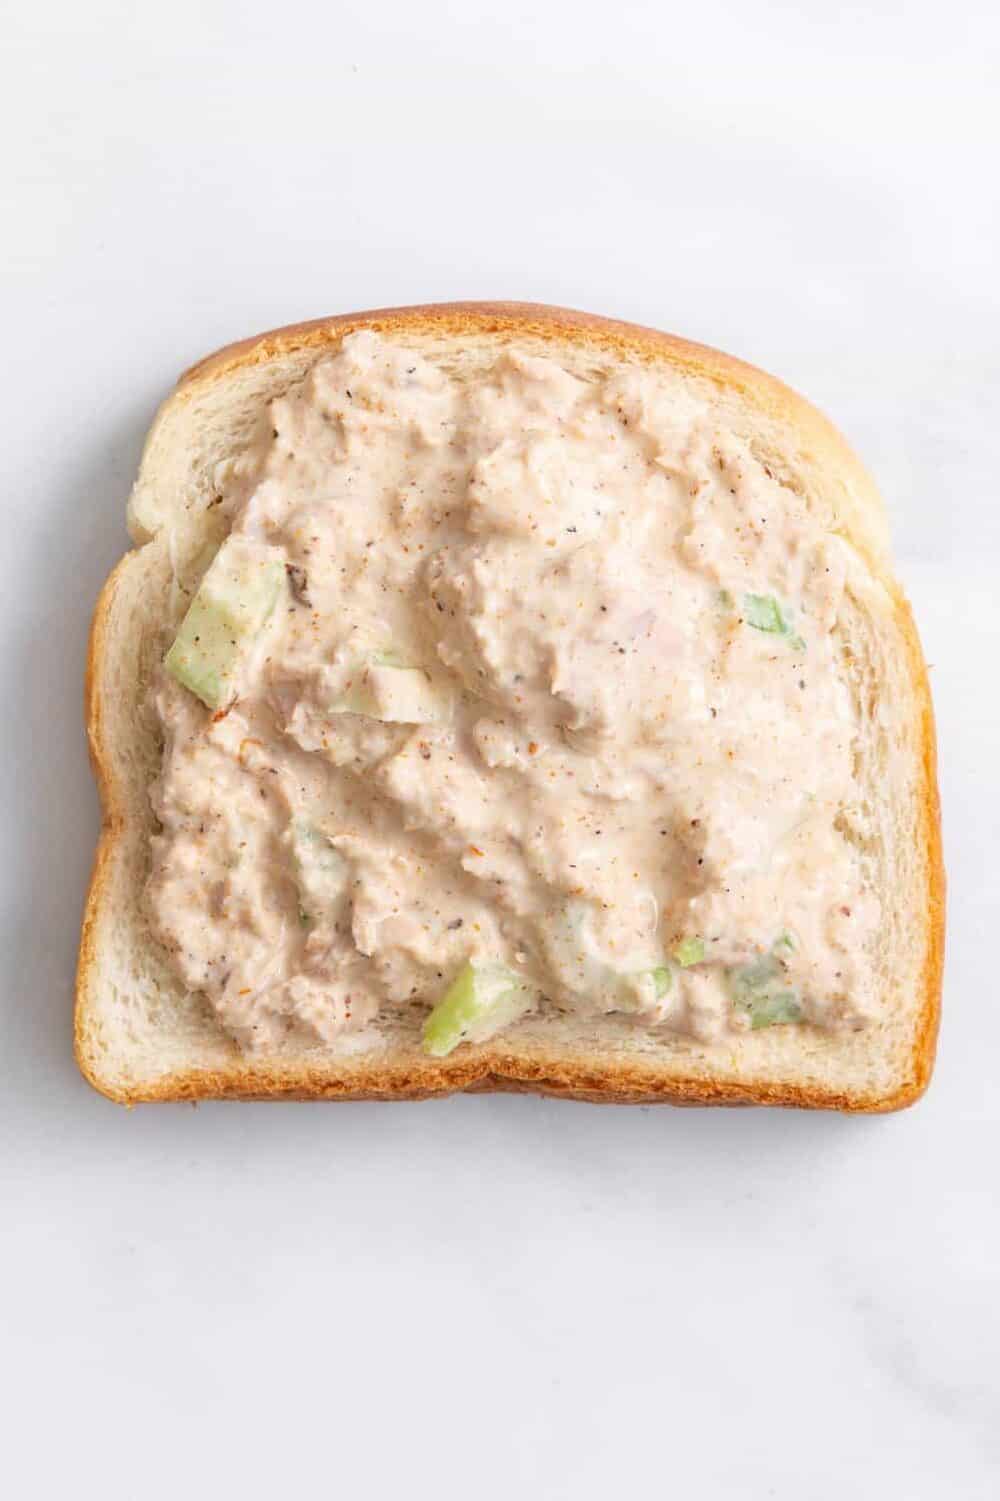 step 1 to make a tuna melt sandwich, place tuna salad on a piece of white toast